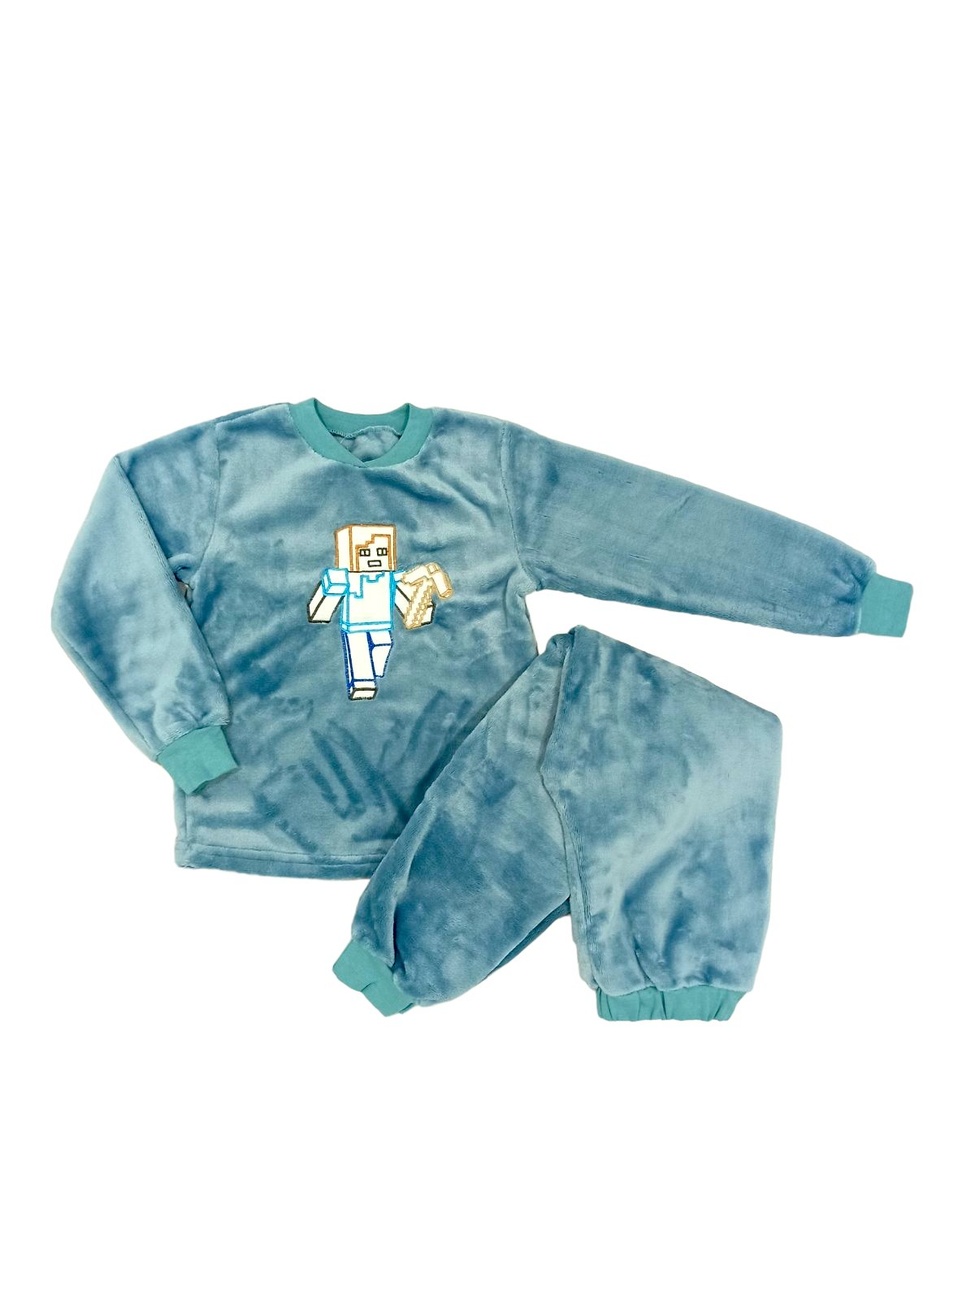 Детские трикотажные пижамы для мальчика. Пижама с вышивкой подростковая голубого цвета. ТМ «Пташка Украина»